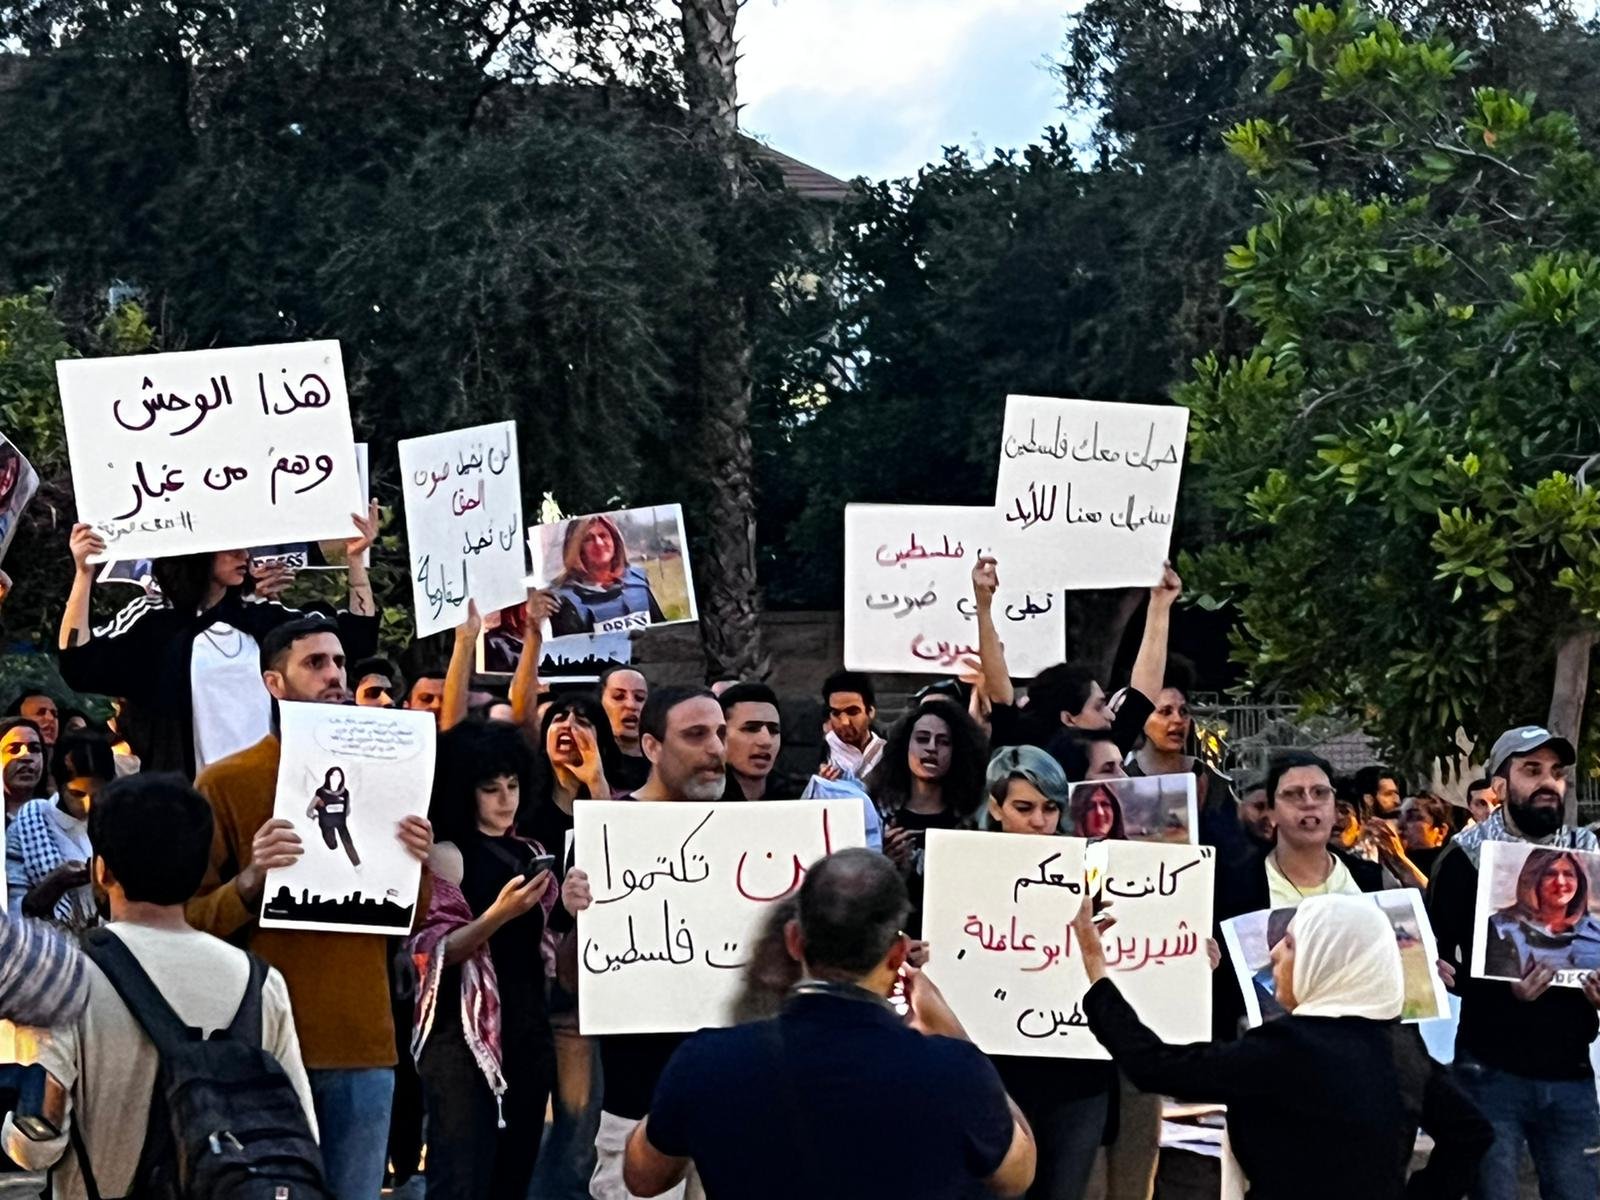 صور الشهيدة وأعلام فلسطينية وإغلاق شارع| مظاهرة حاشدة في حيفا في أعقاب اغتيال شيرين أبو عاقلة-4